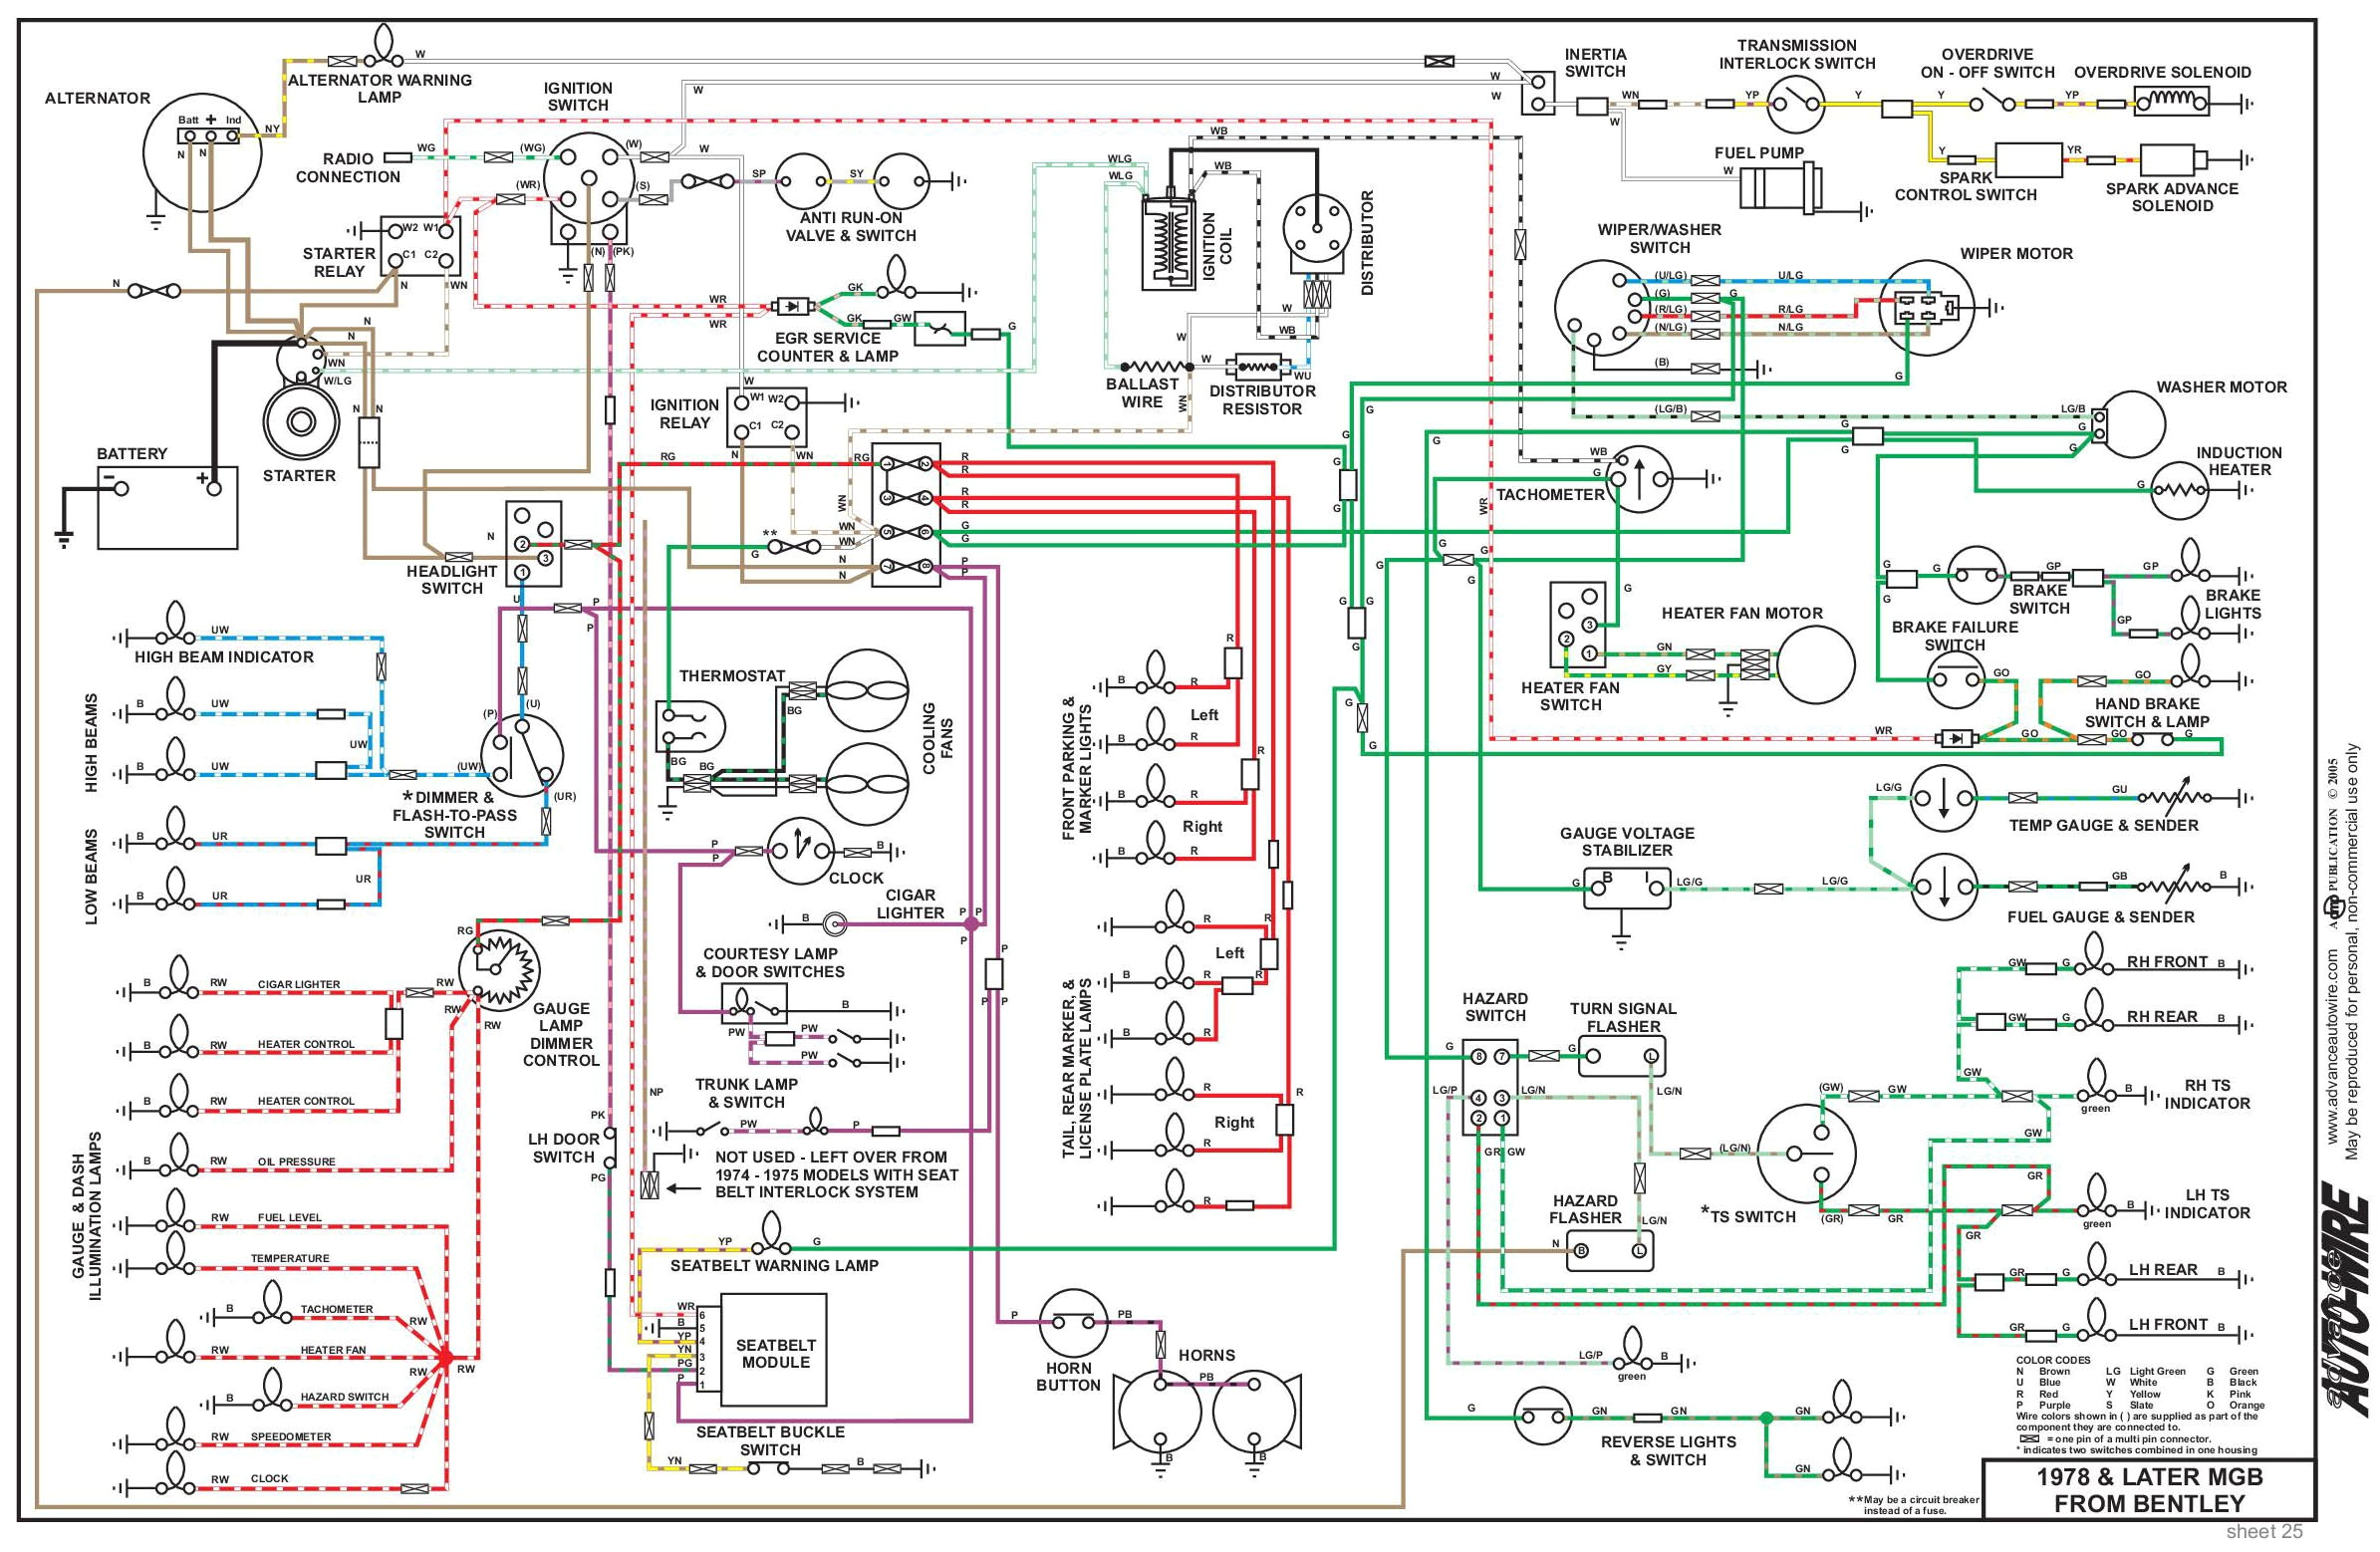 1976 mgb wiring schematic data schematic diagram 1976 mgb wiring diagram 1976 mgb wiring diagram